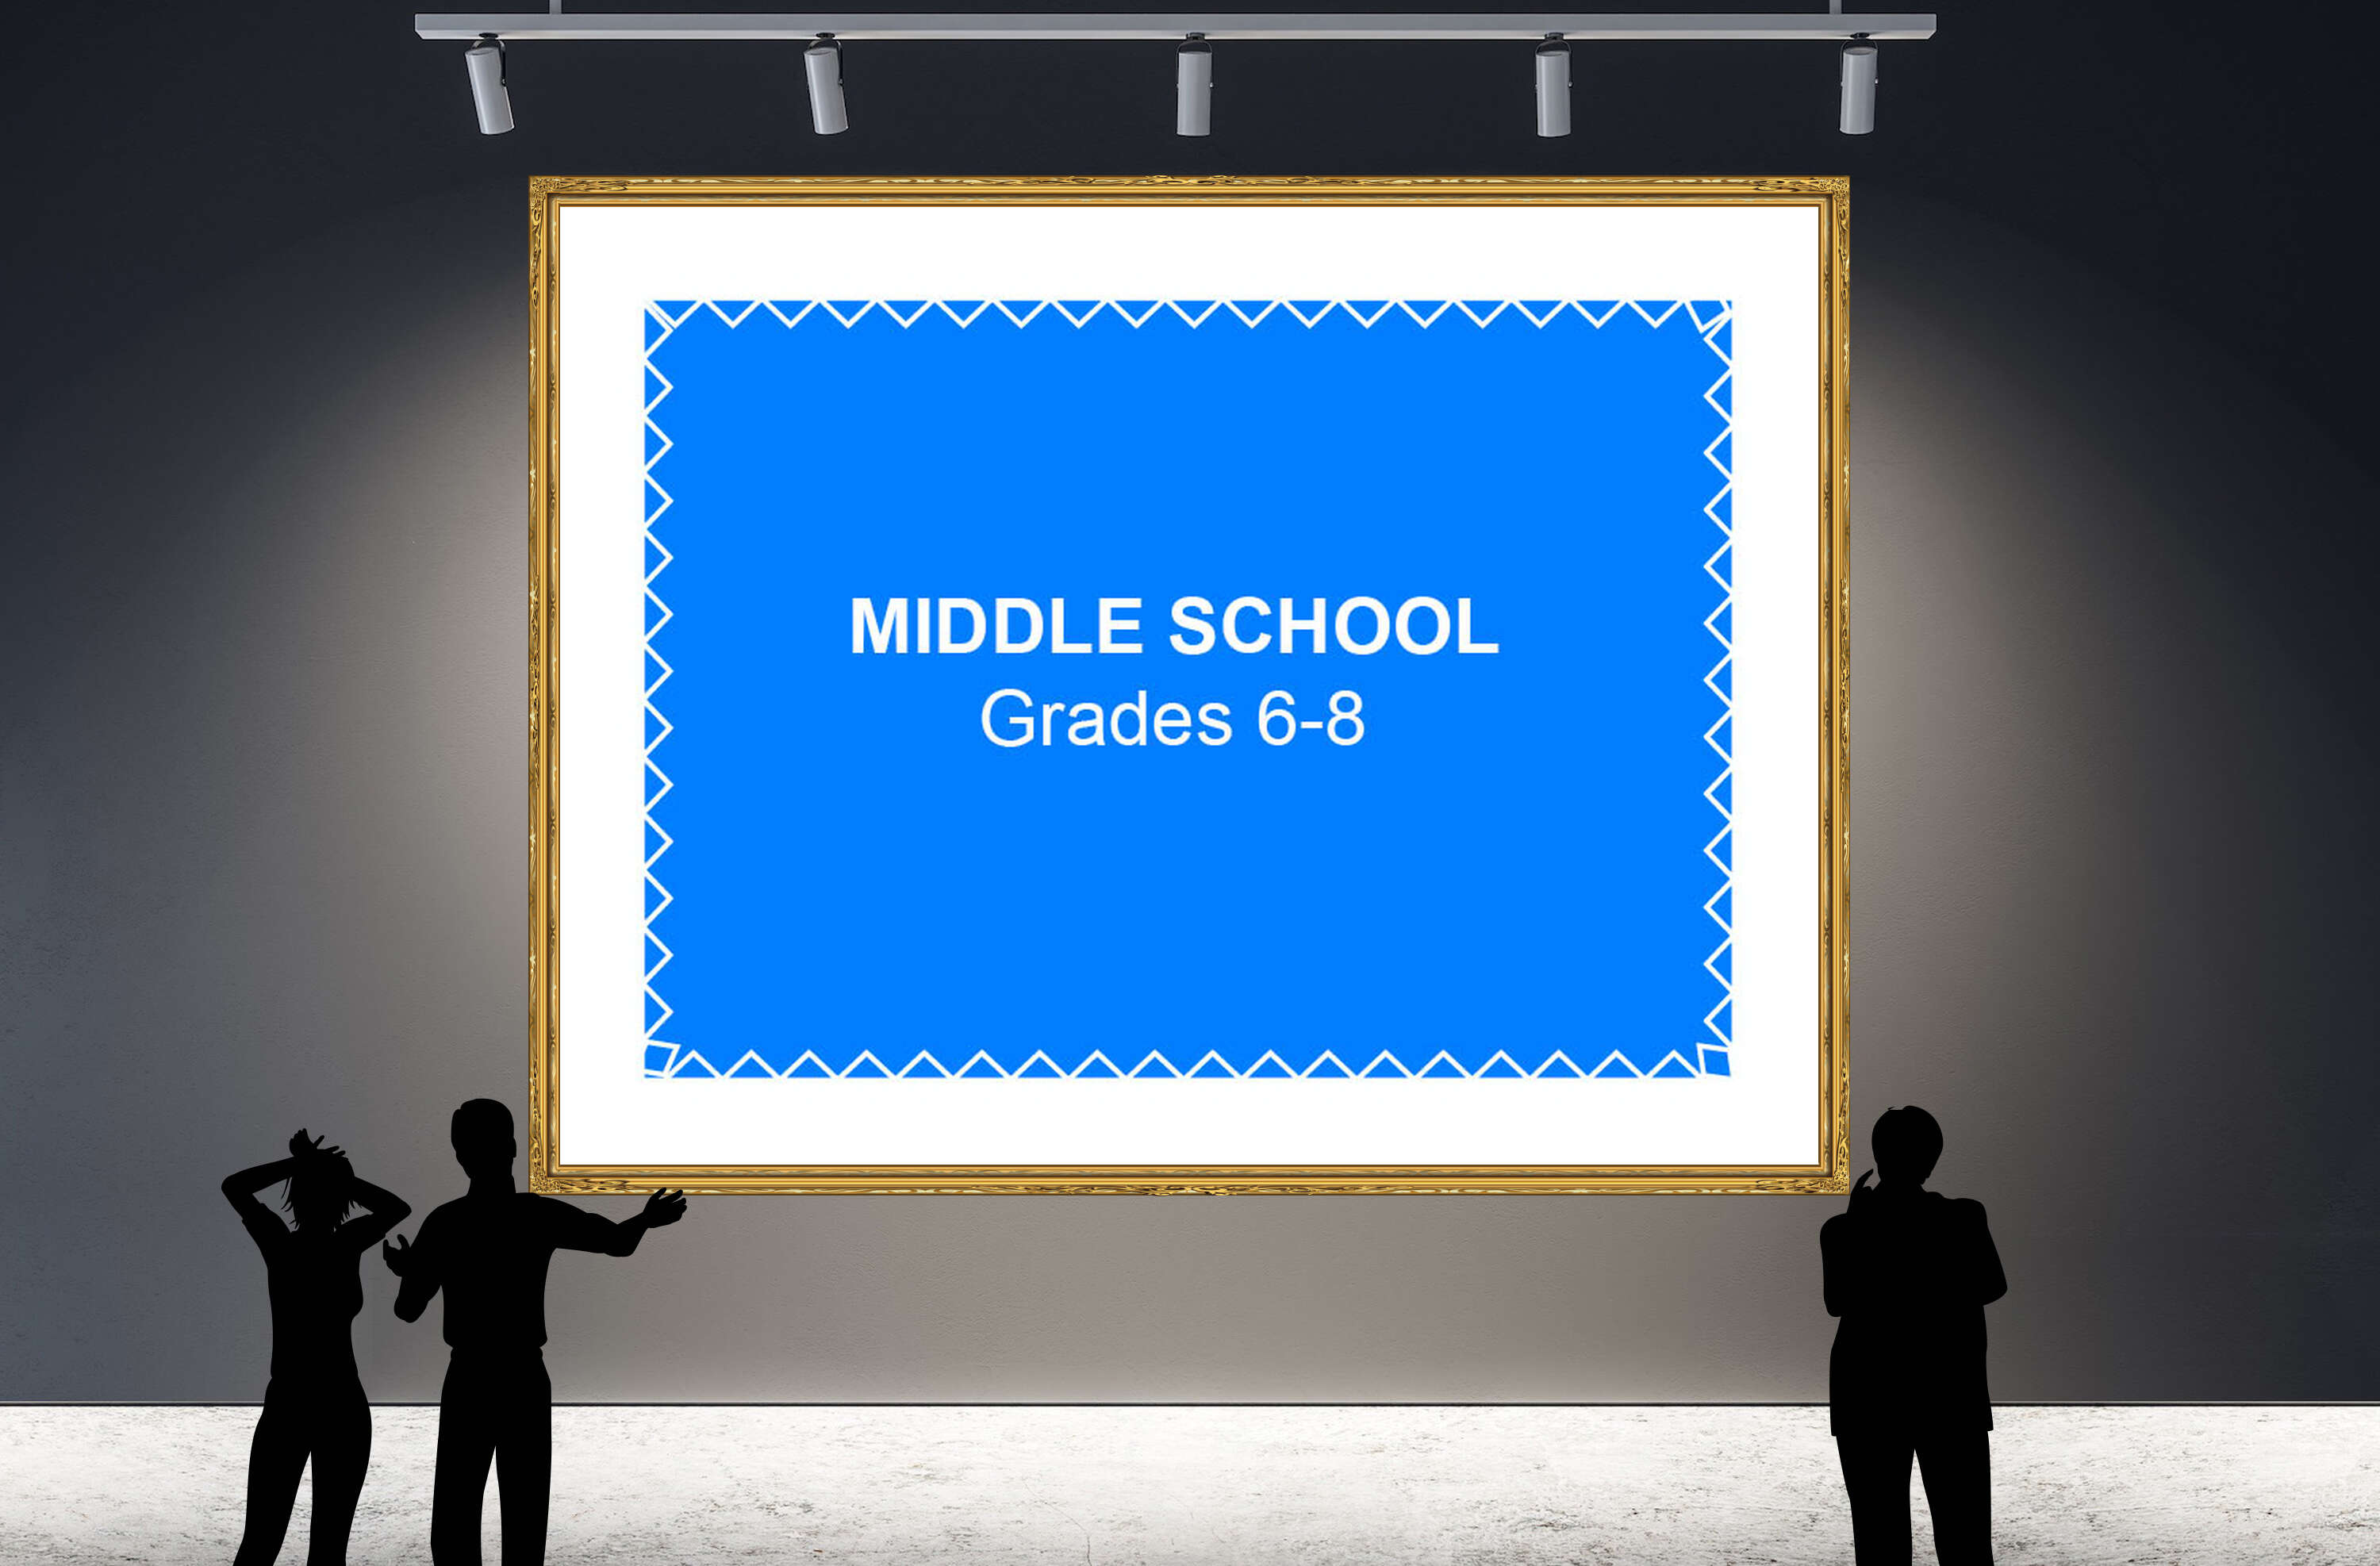 Middle School Grades 6-8